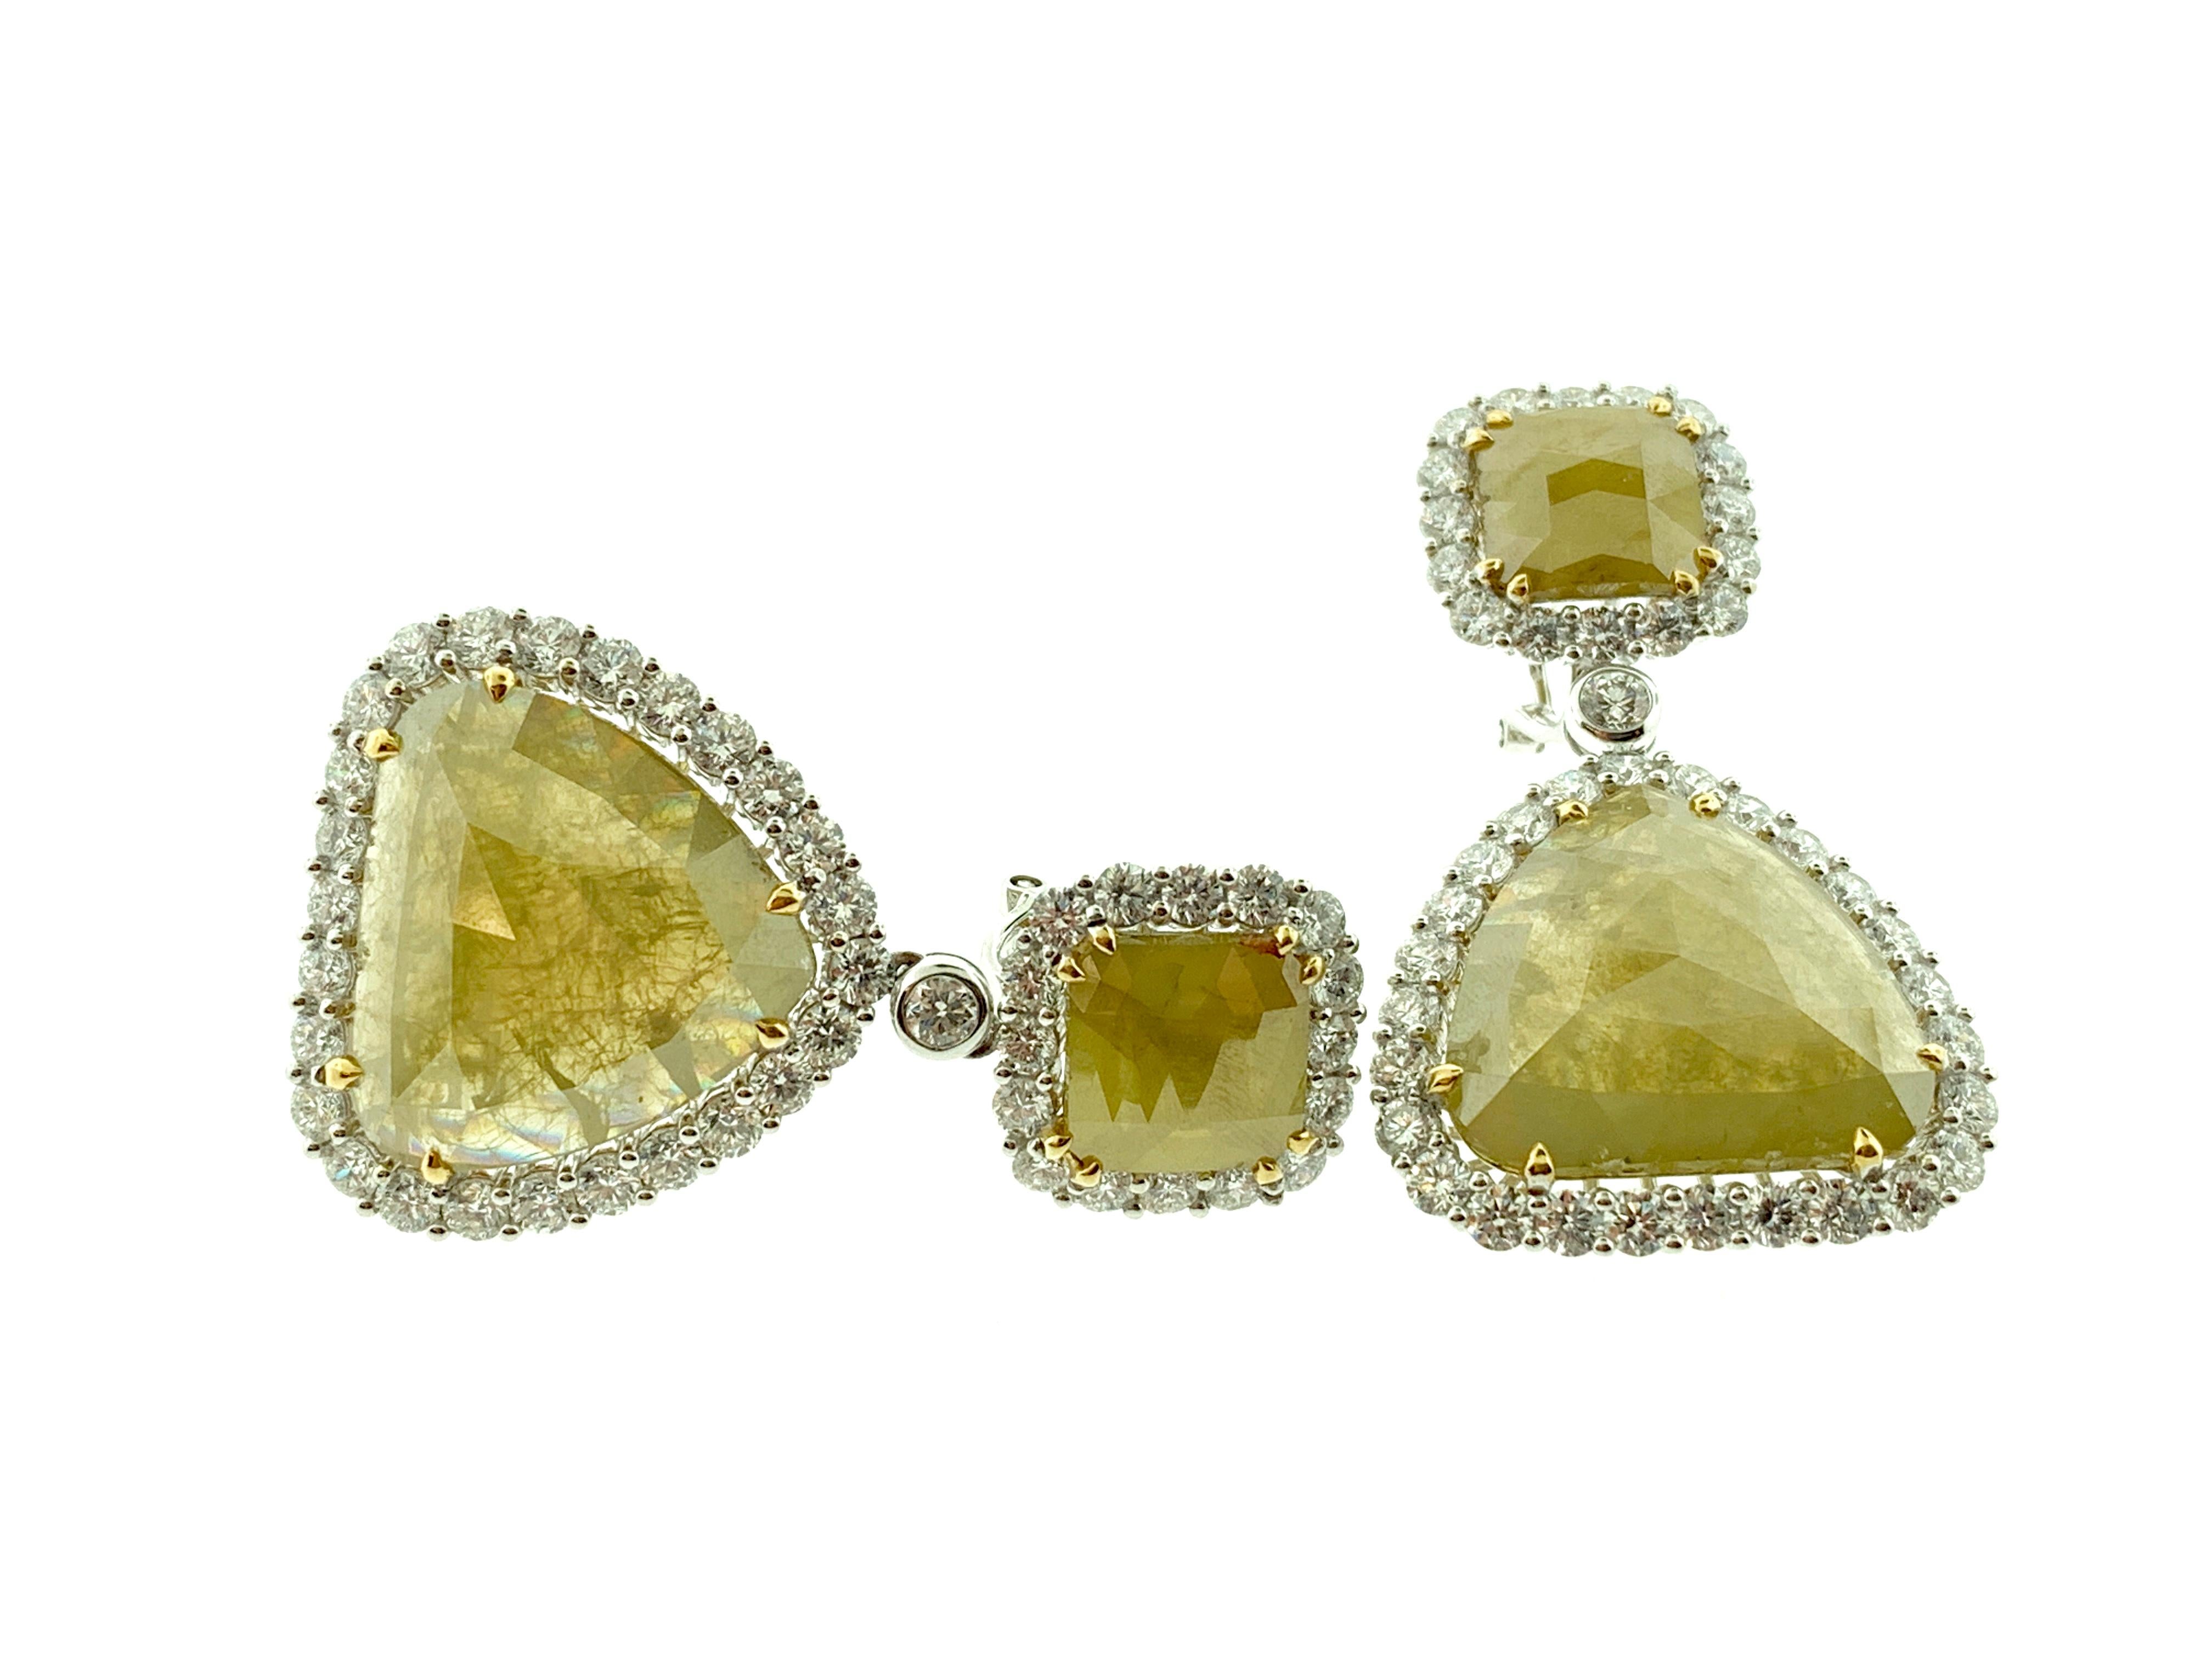 Diese atemberaubenden Ohrringe bestehen aus 2 natürlichen (unerhitzten) gelben Diamanten im Rosenschliff mit einem Gesamtgewicht von 32,52 Karat, die von einem einzigen Halo aus runden Brillanten umgeben sind. 

Sie hängen an natürlichen gelben